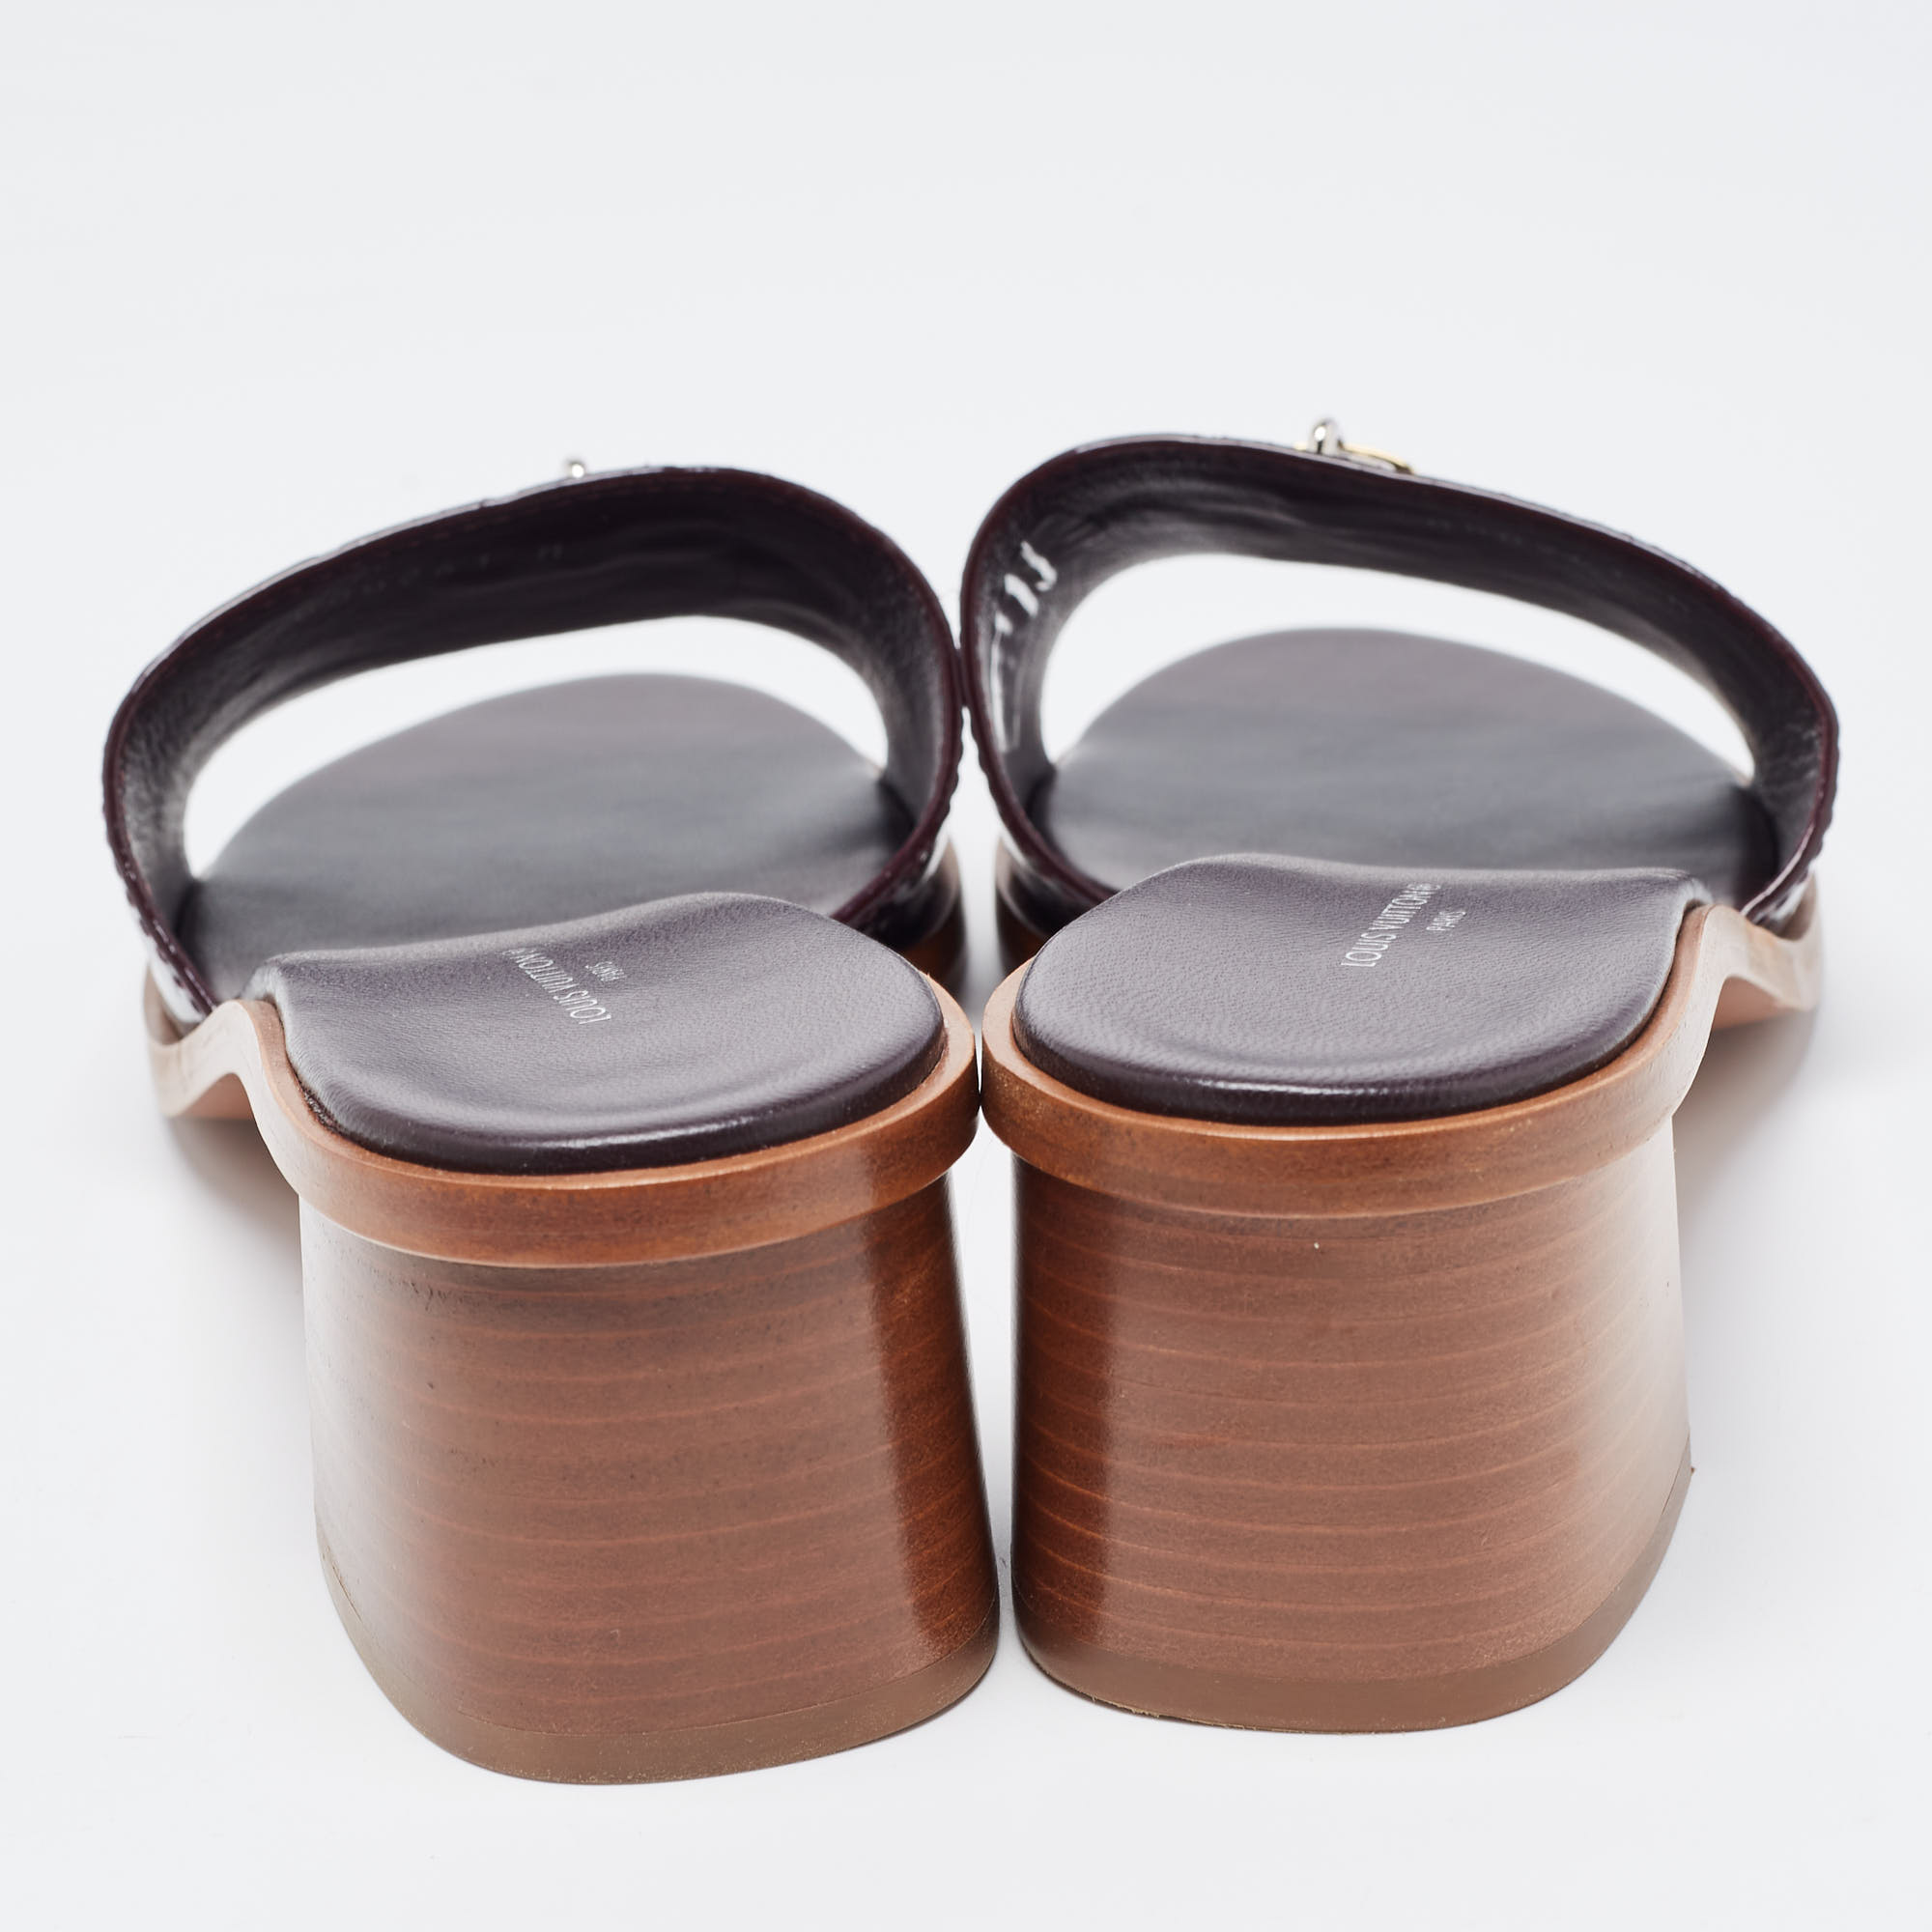 Louis Vuitton Amarante Patent Leather Lock It Sandals Size 40